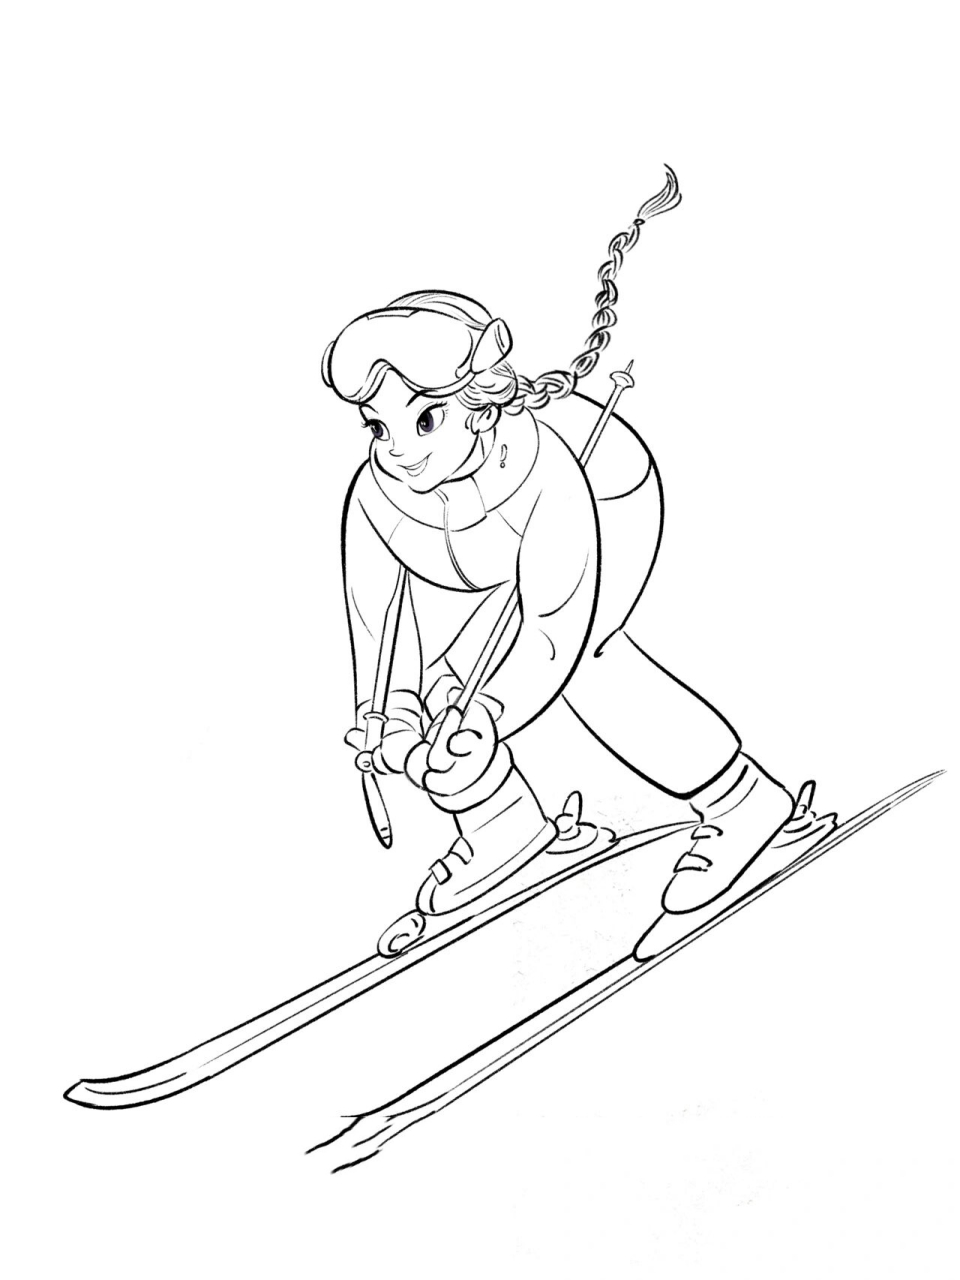 谷爱玲滑雪简笔画图片